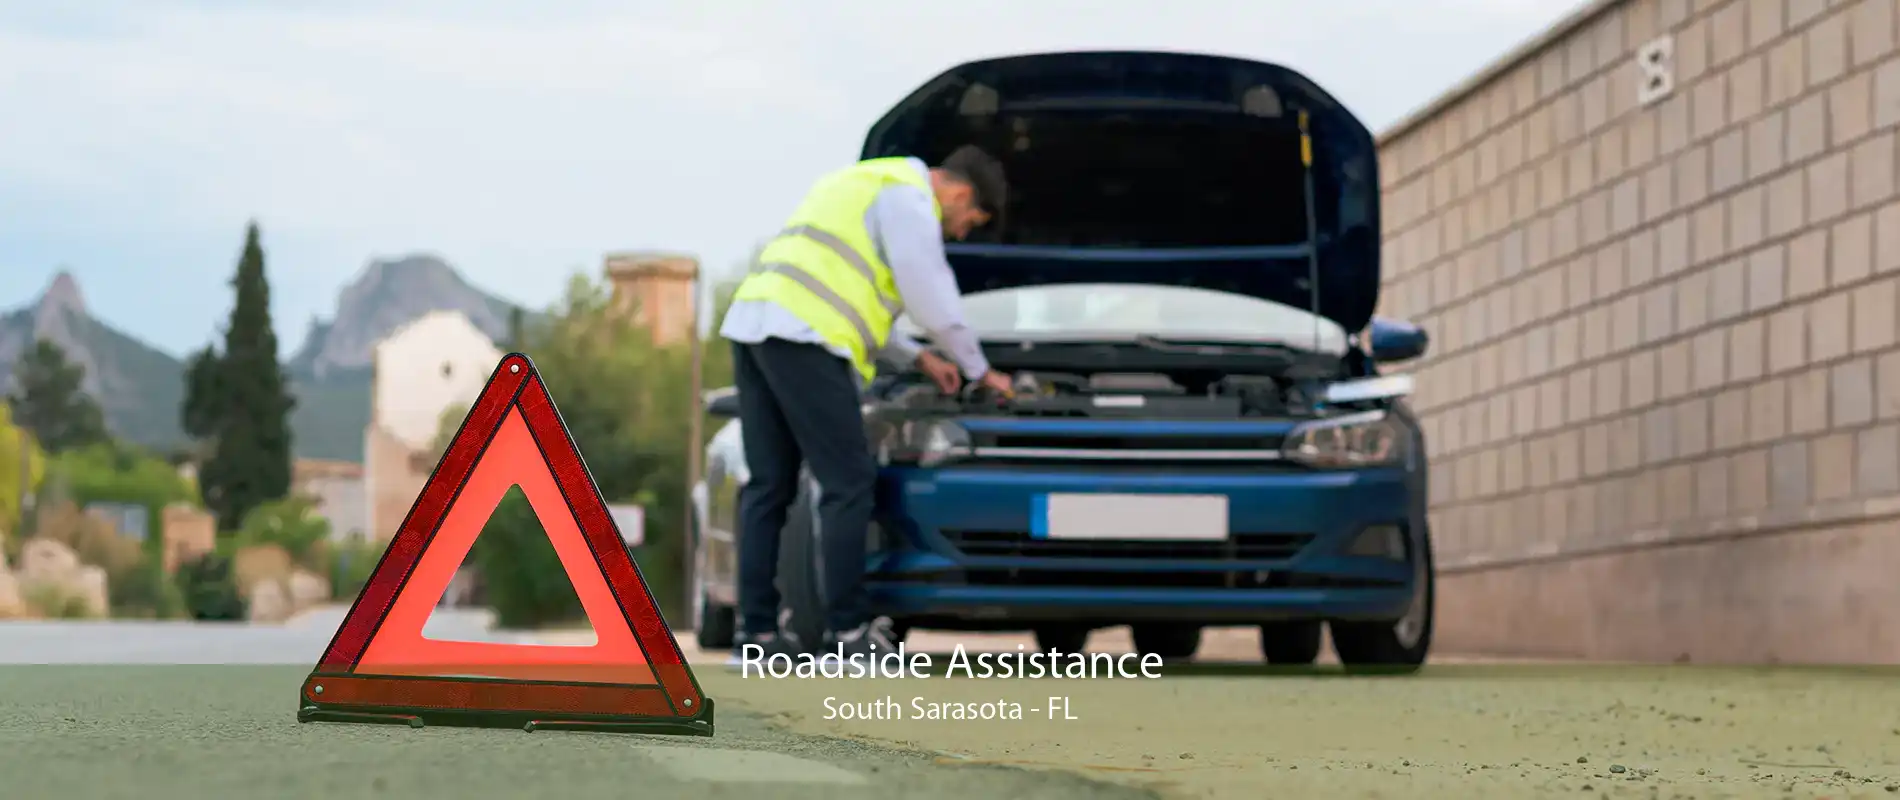 Roadside Assistance South Sarasota - FL